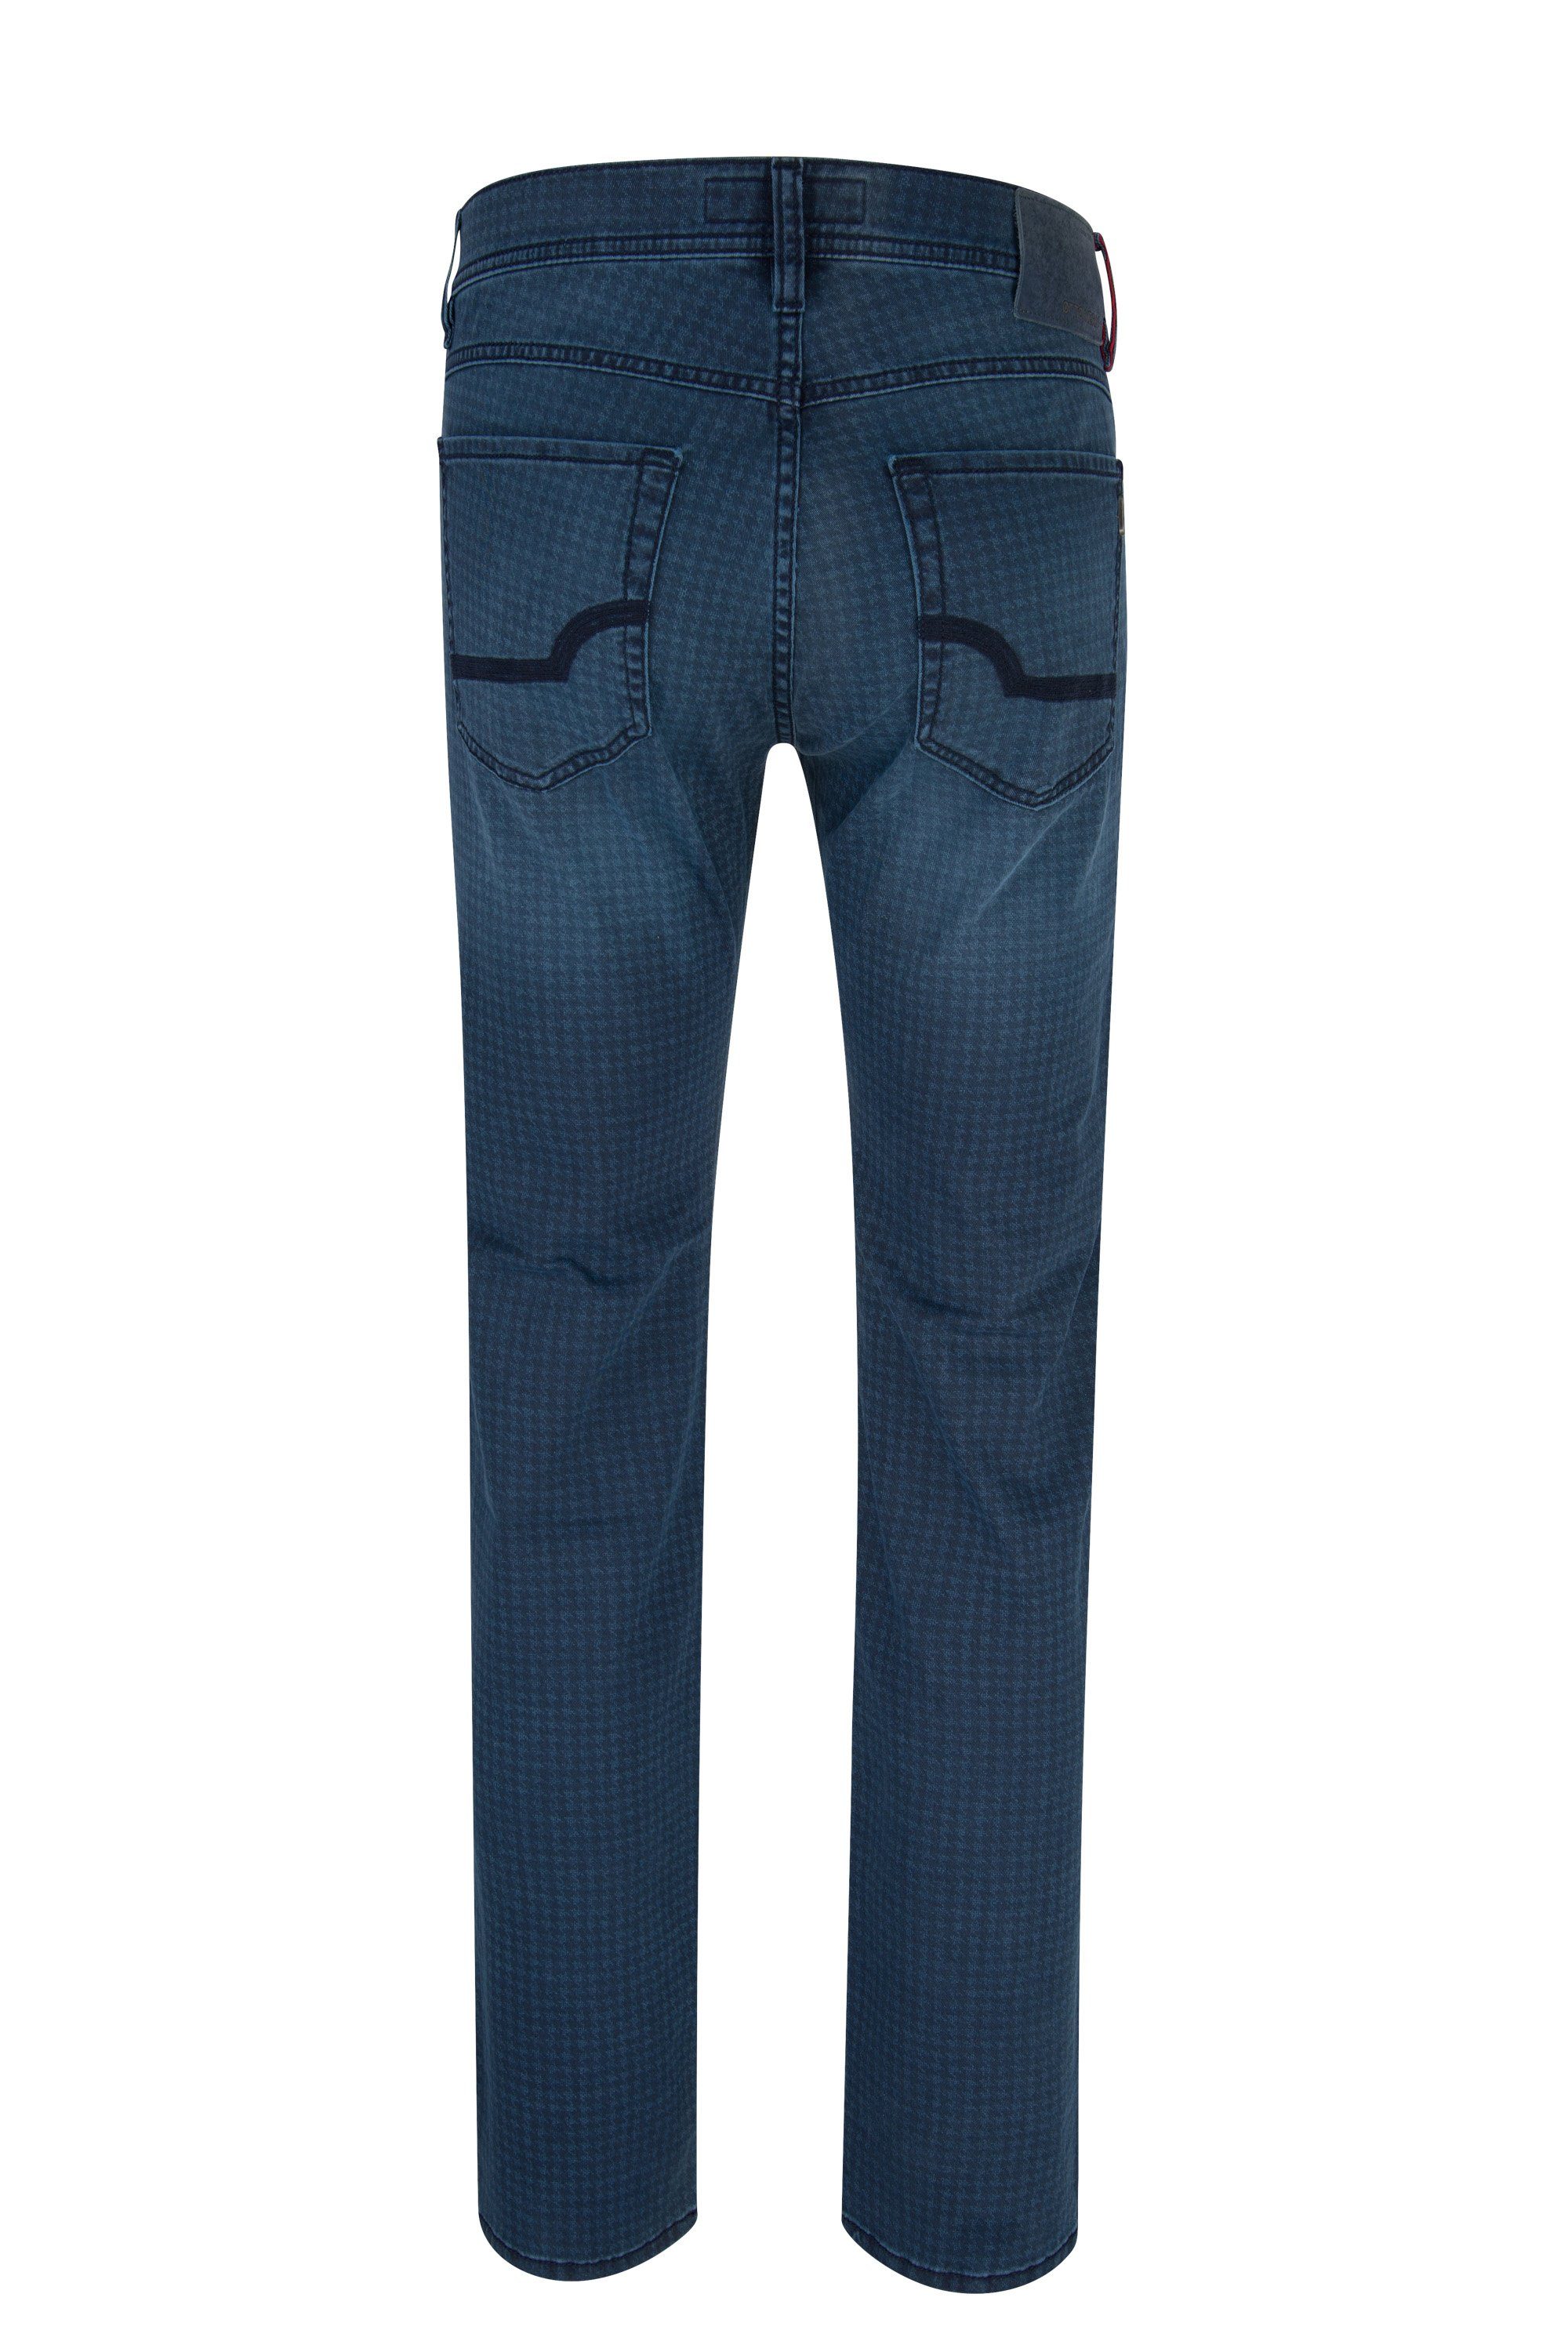 Herren Jeans Otto Kern 5-Pocket-Jeans OTTO KERN JOHN blue used patterned 67042 6700.6822